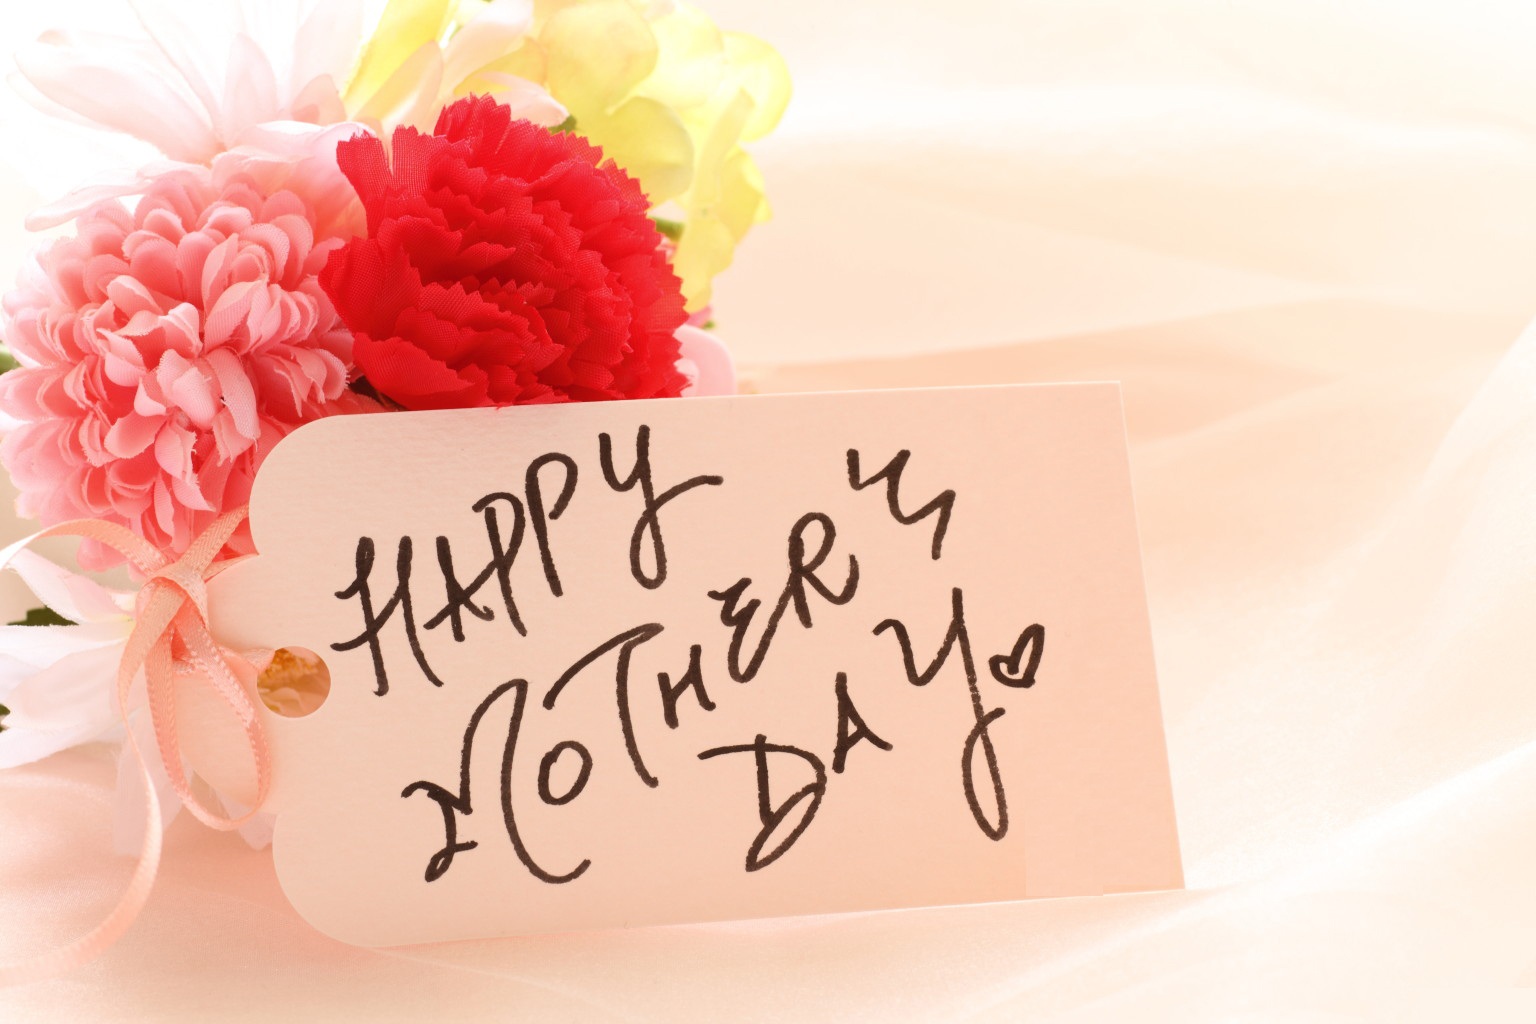 Cẩm chướng là loài hoa được chọn để dành tặng cho Mẹ vào ngày 14/5